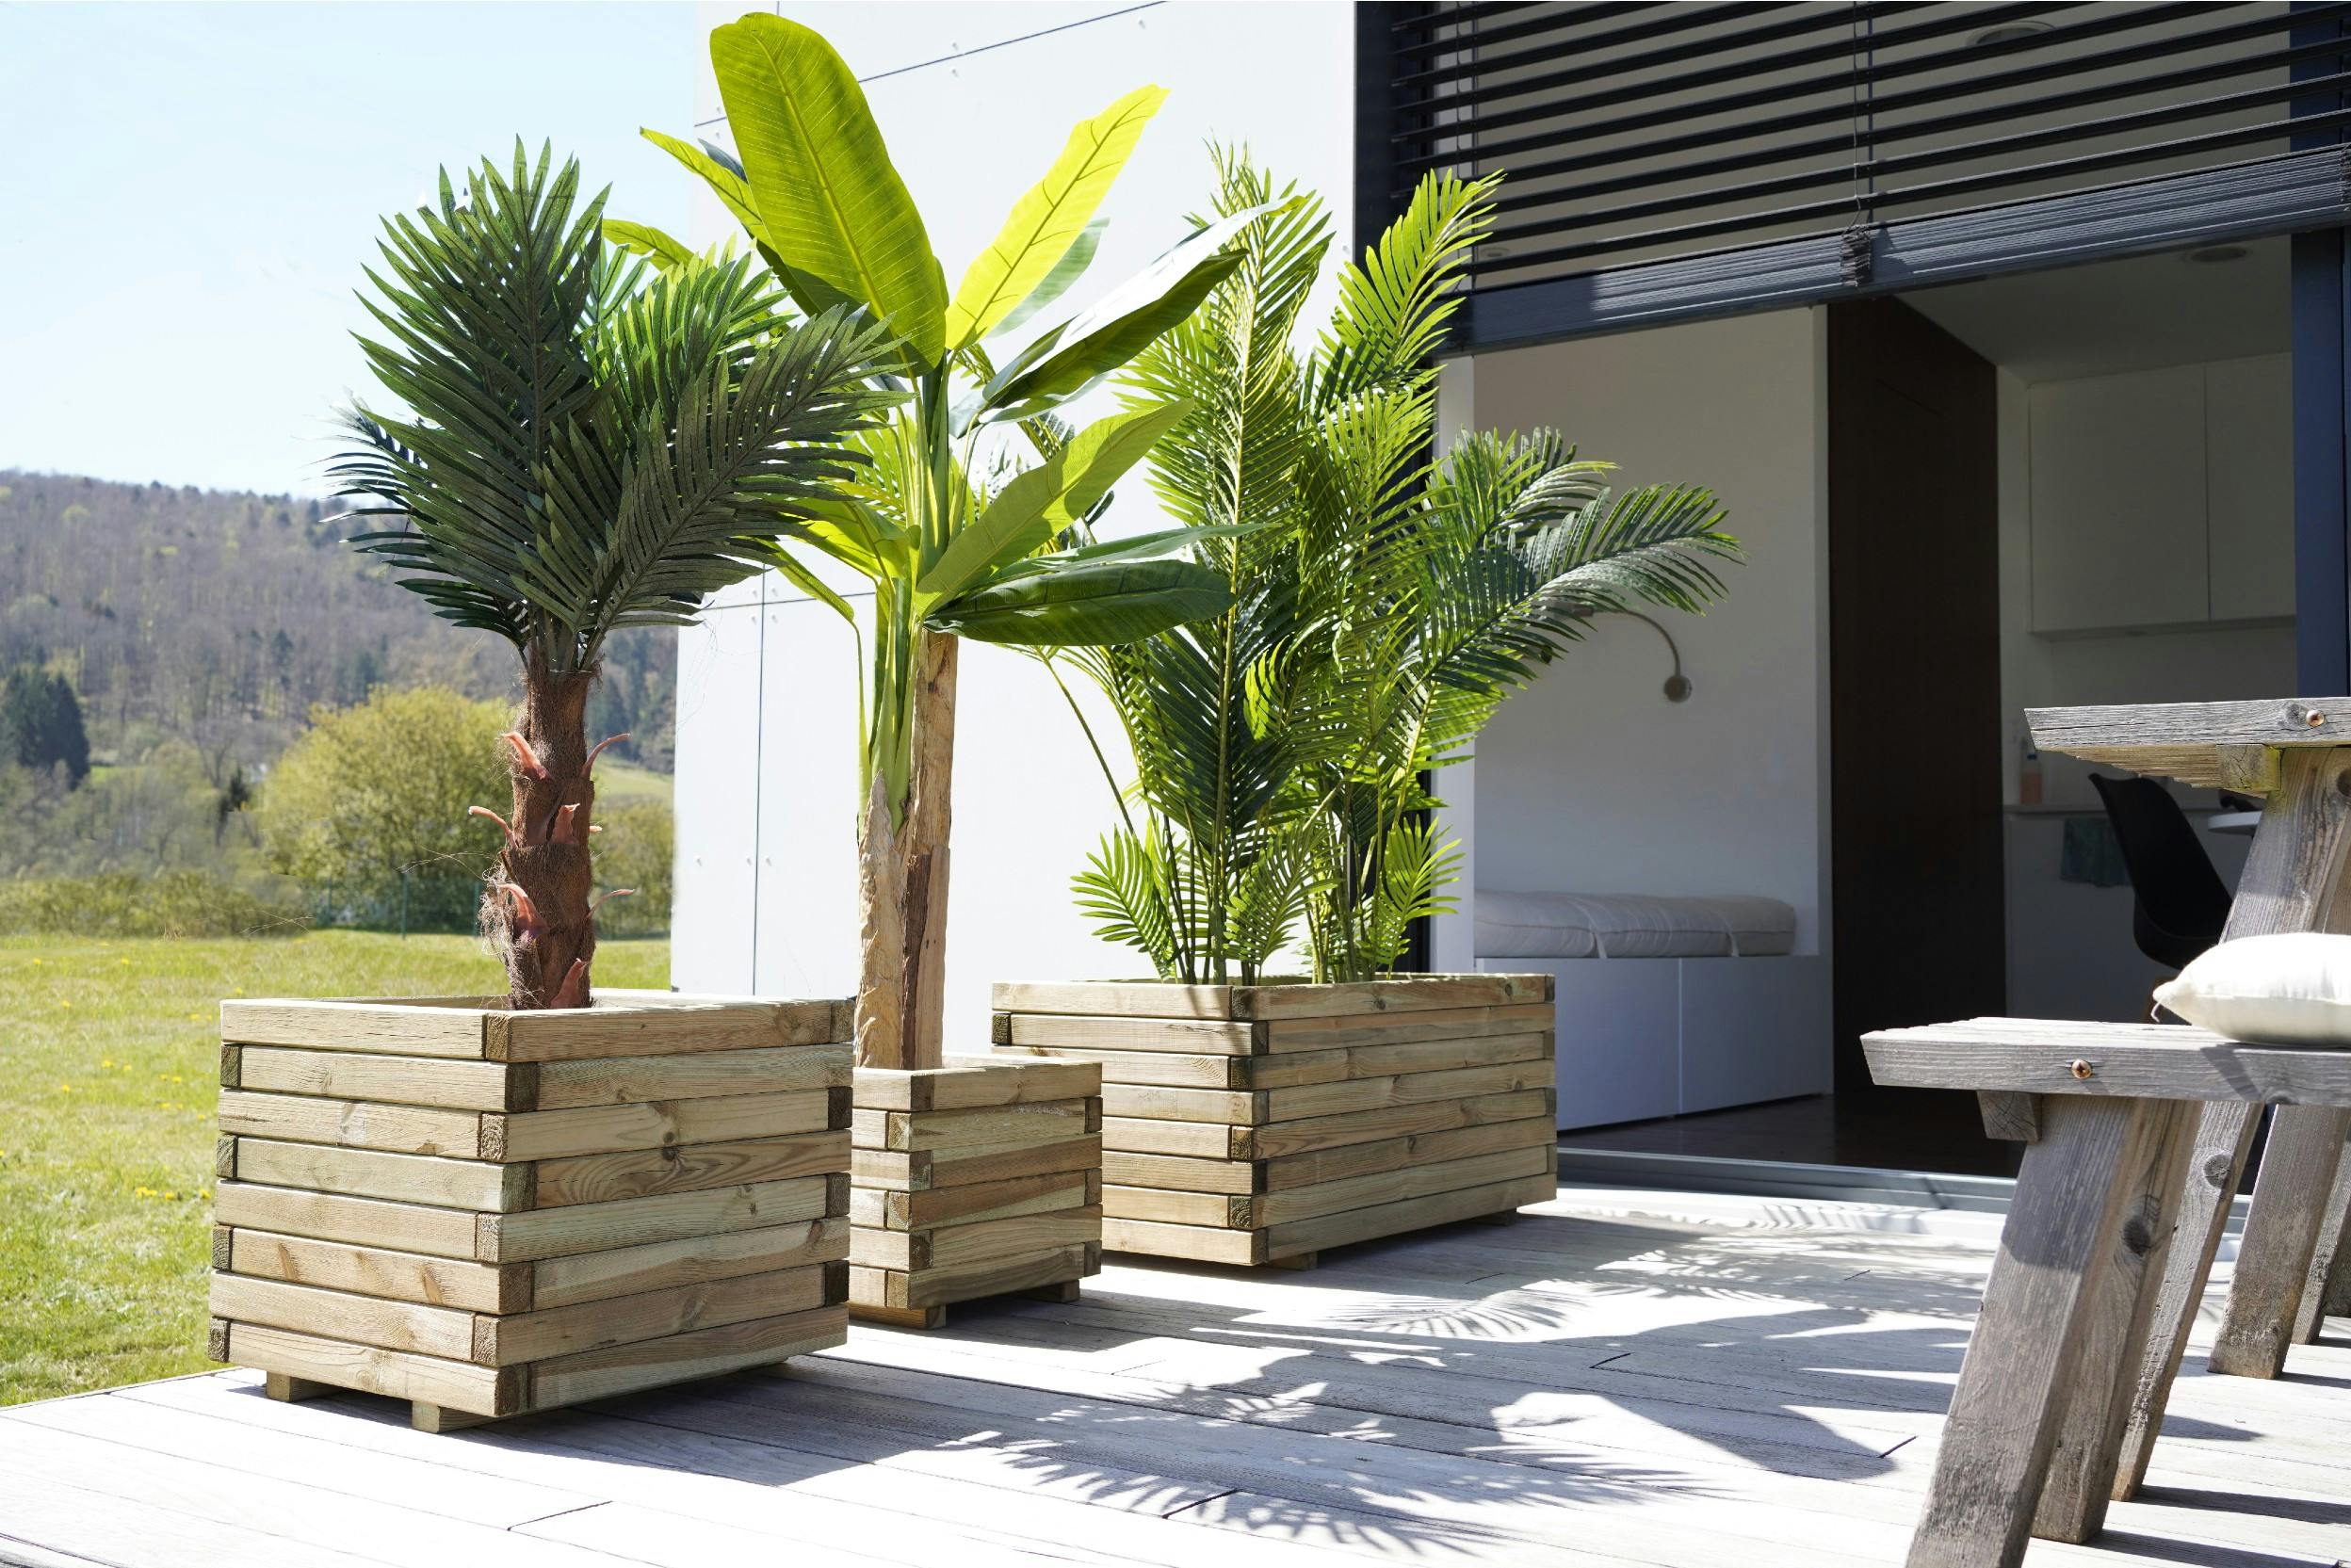 Drei grosse Pflanzenkübel mit Palmen und Bananenpflanze am Rande einer modernen Terrasse